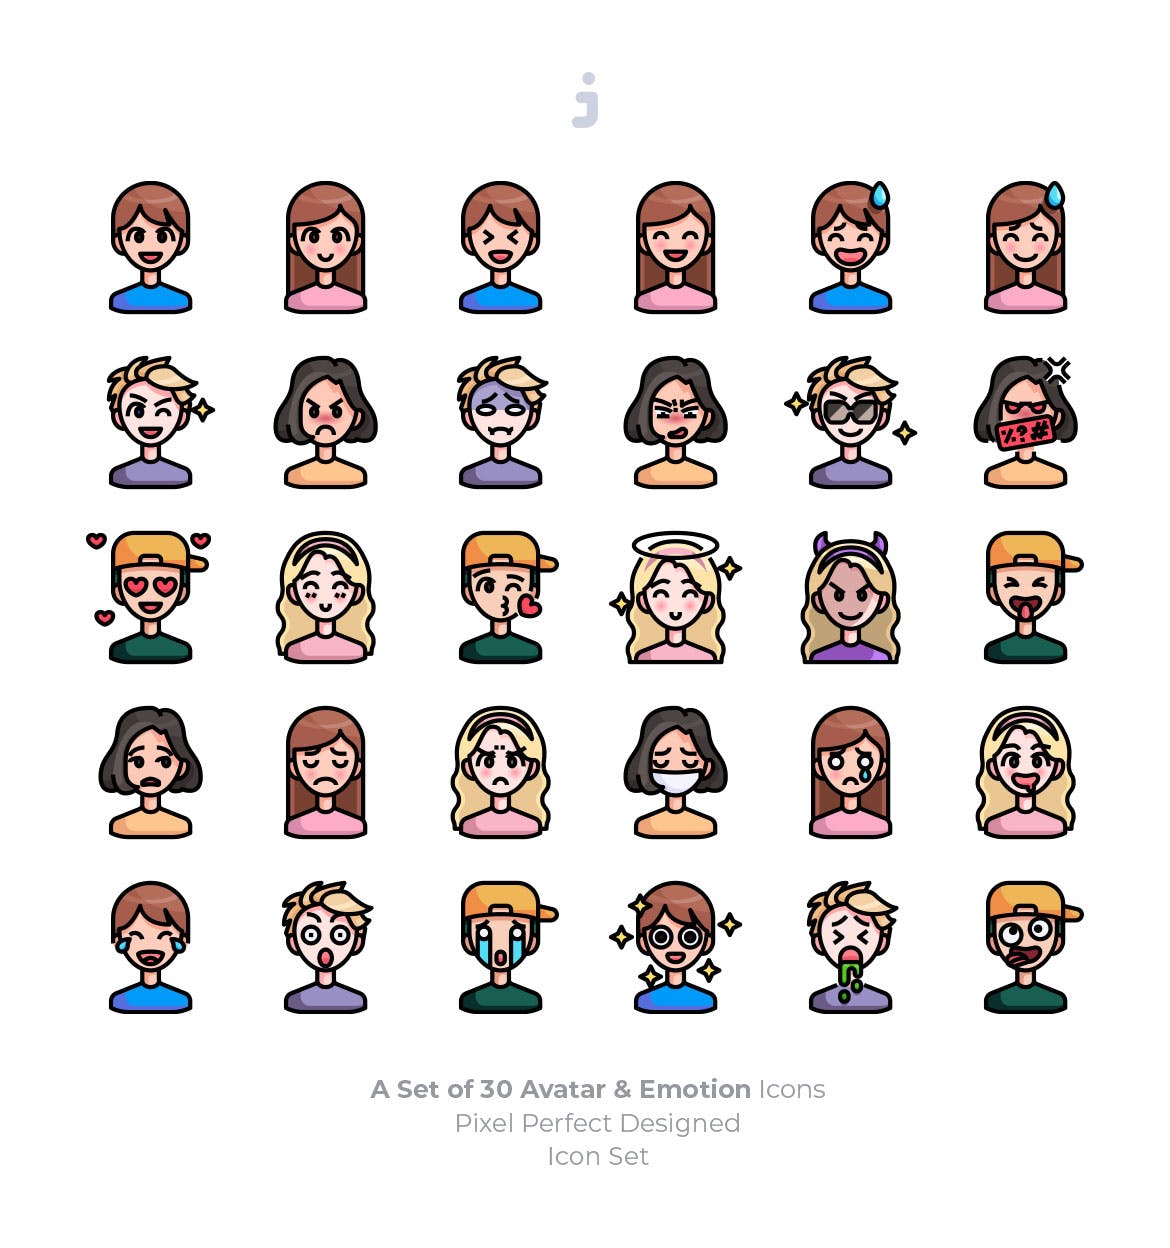 30枚彩色人物头像&表情矢量蚂蚁素材精选图标 30 Avatar and Emotion Icons插图(1)